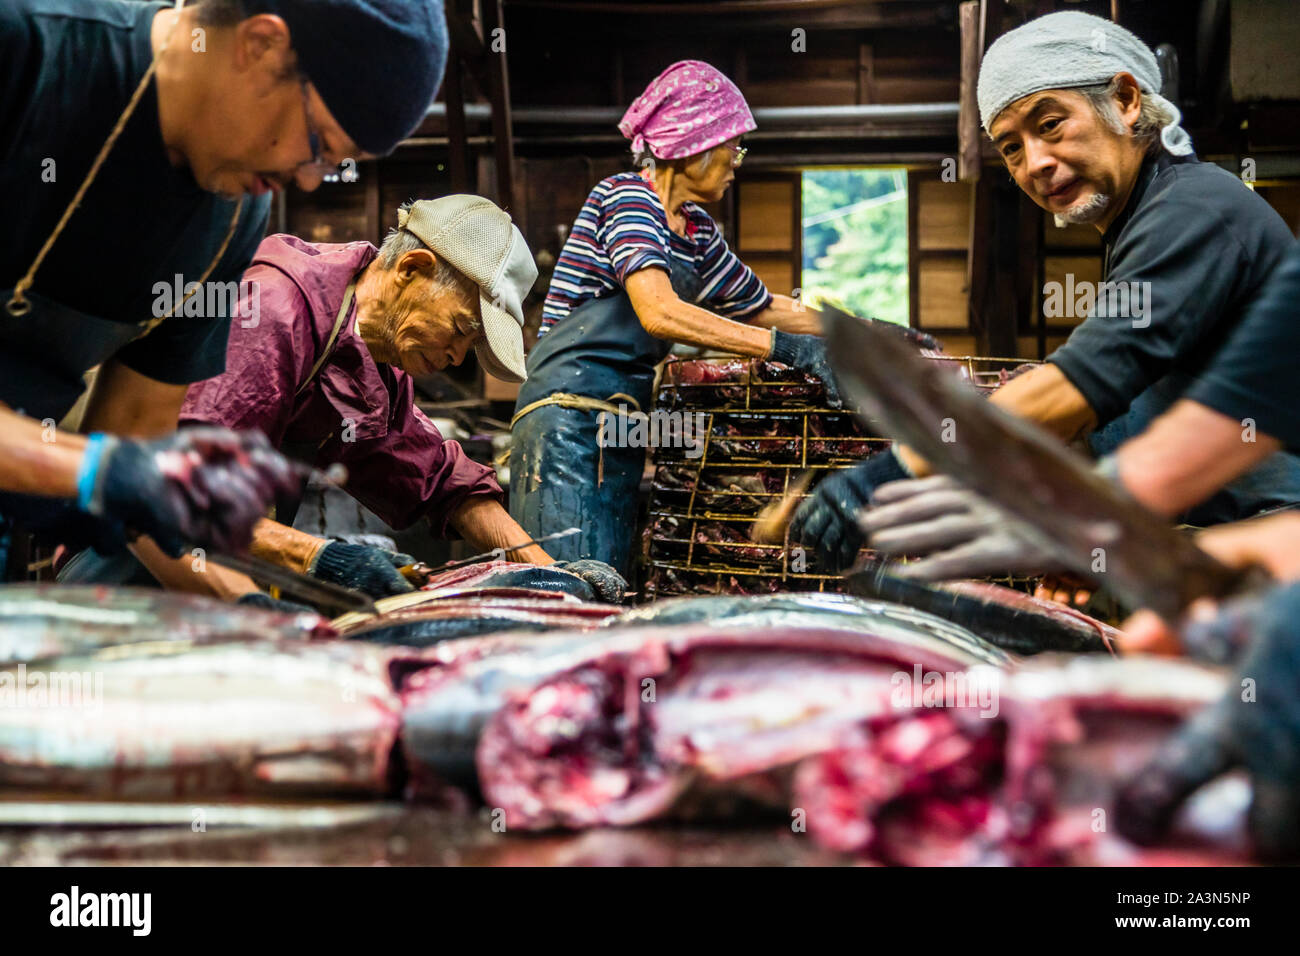 Die kleine Thunfischart Bonito ist filetiert. Yasuhisa Serizawa, rechts im Bild. Ihm gegenüber steht sein Vater, der mit weit über 80 Jahren immer noch beim Schneiden der Fische hilft. Seine Mutter nimmt die Hälften des Fisches und legt sie für den nächsten Schritt in einen großen Metallkorb. Yasuhisa Serizawas Katsuobushi-Manufaktur in Nishiizu-Cho, Shizuoka, Japan Stockfoto